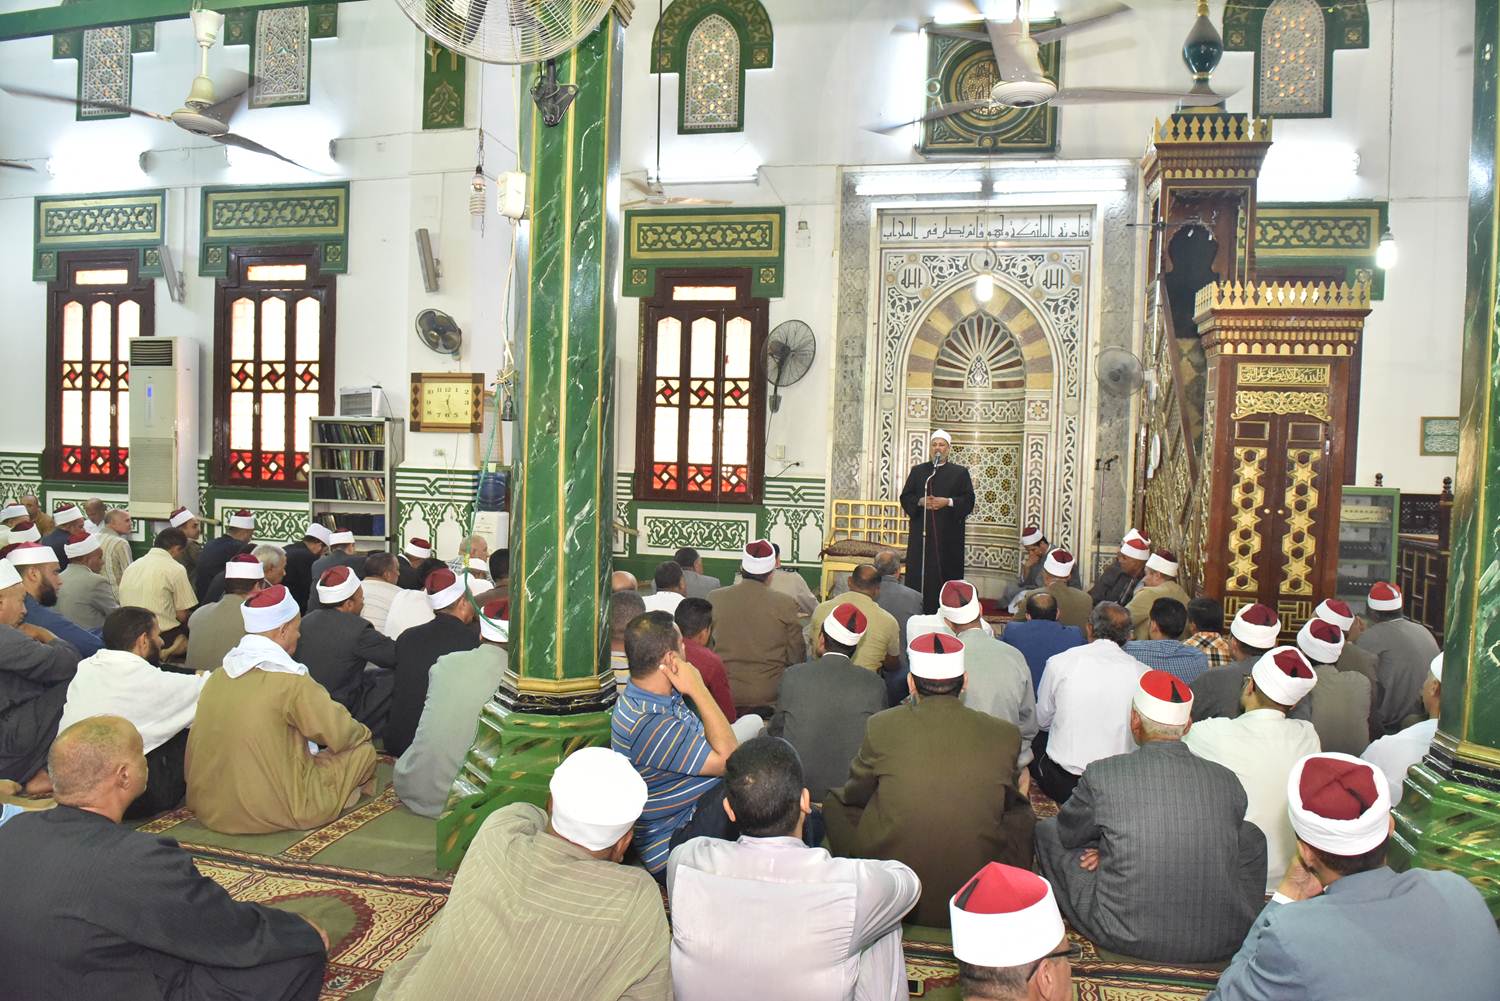  احتفال مديرية الأوقاف بالعام الهجرى الجديد بمسجد ناصر  